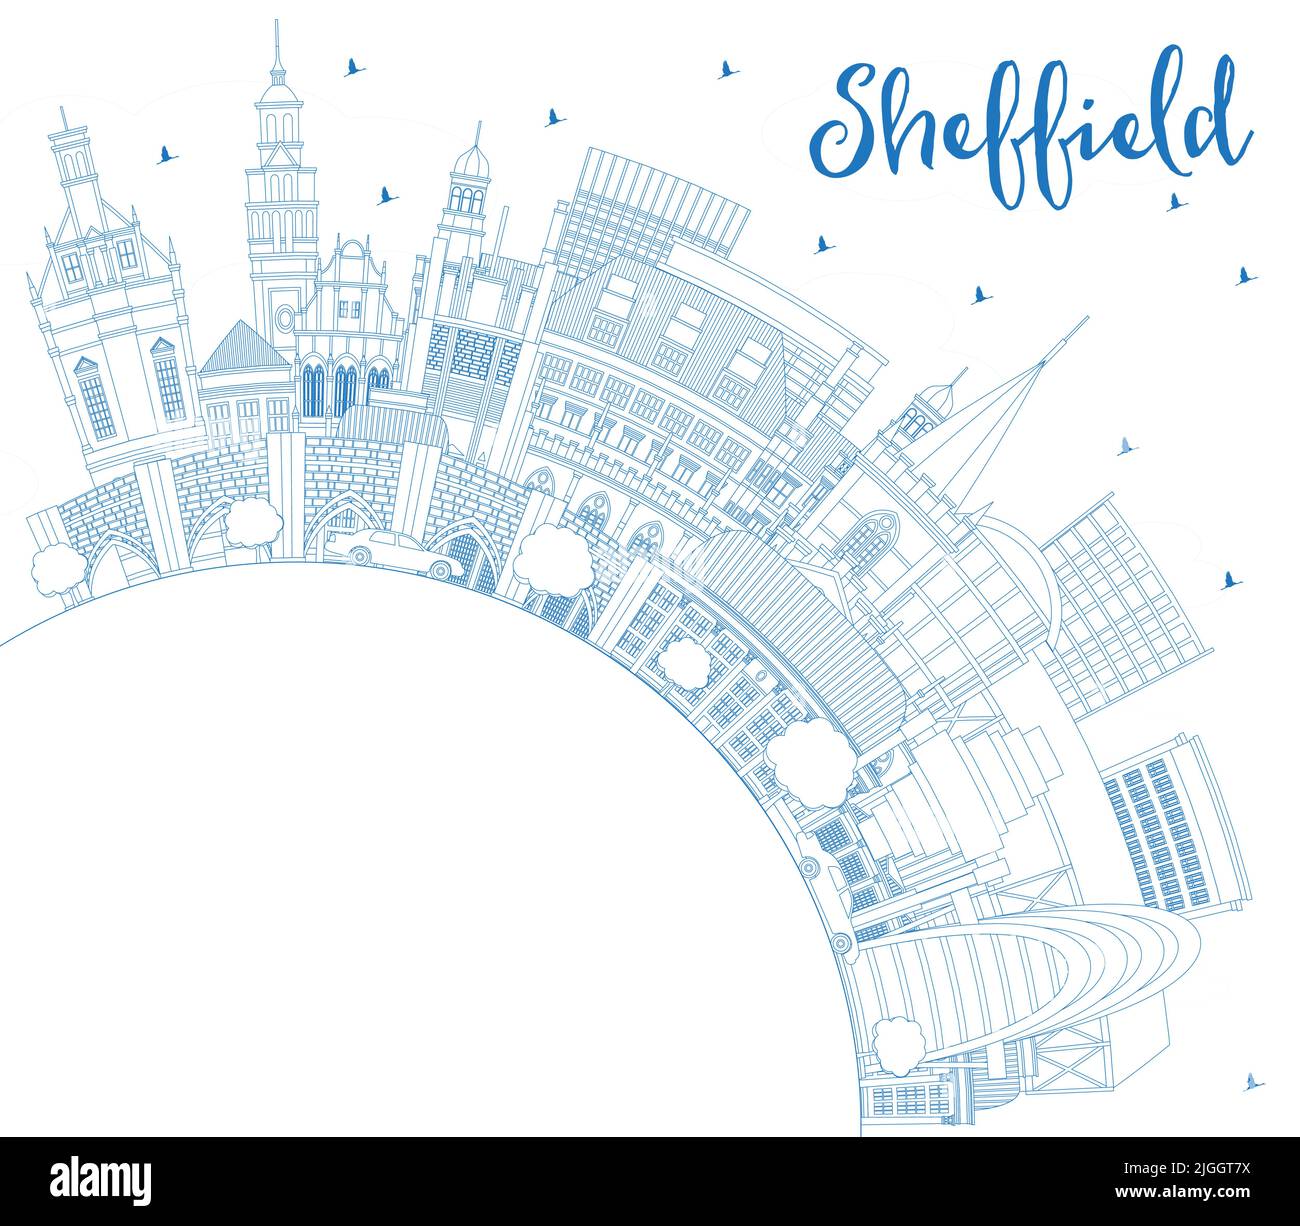 Skizzieren Sie die Skyline von Sheffield UK City mit blauen Gebäuden und Kopierfläche. Vektorgrafik. Stadtbild von Sheffield South Yorkshire mit Wahrzeichen. Stock Vektor